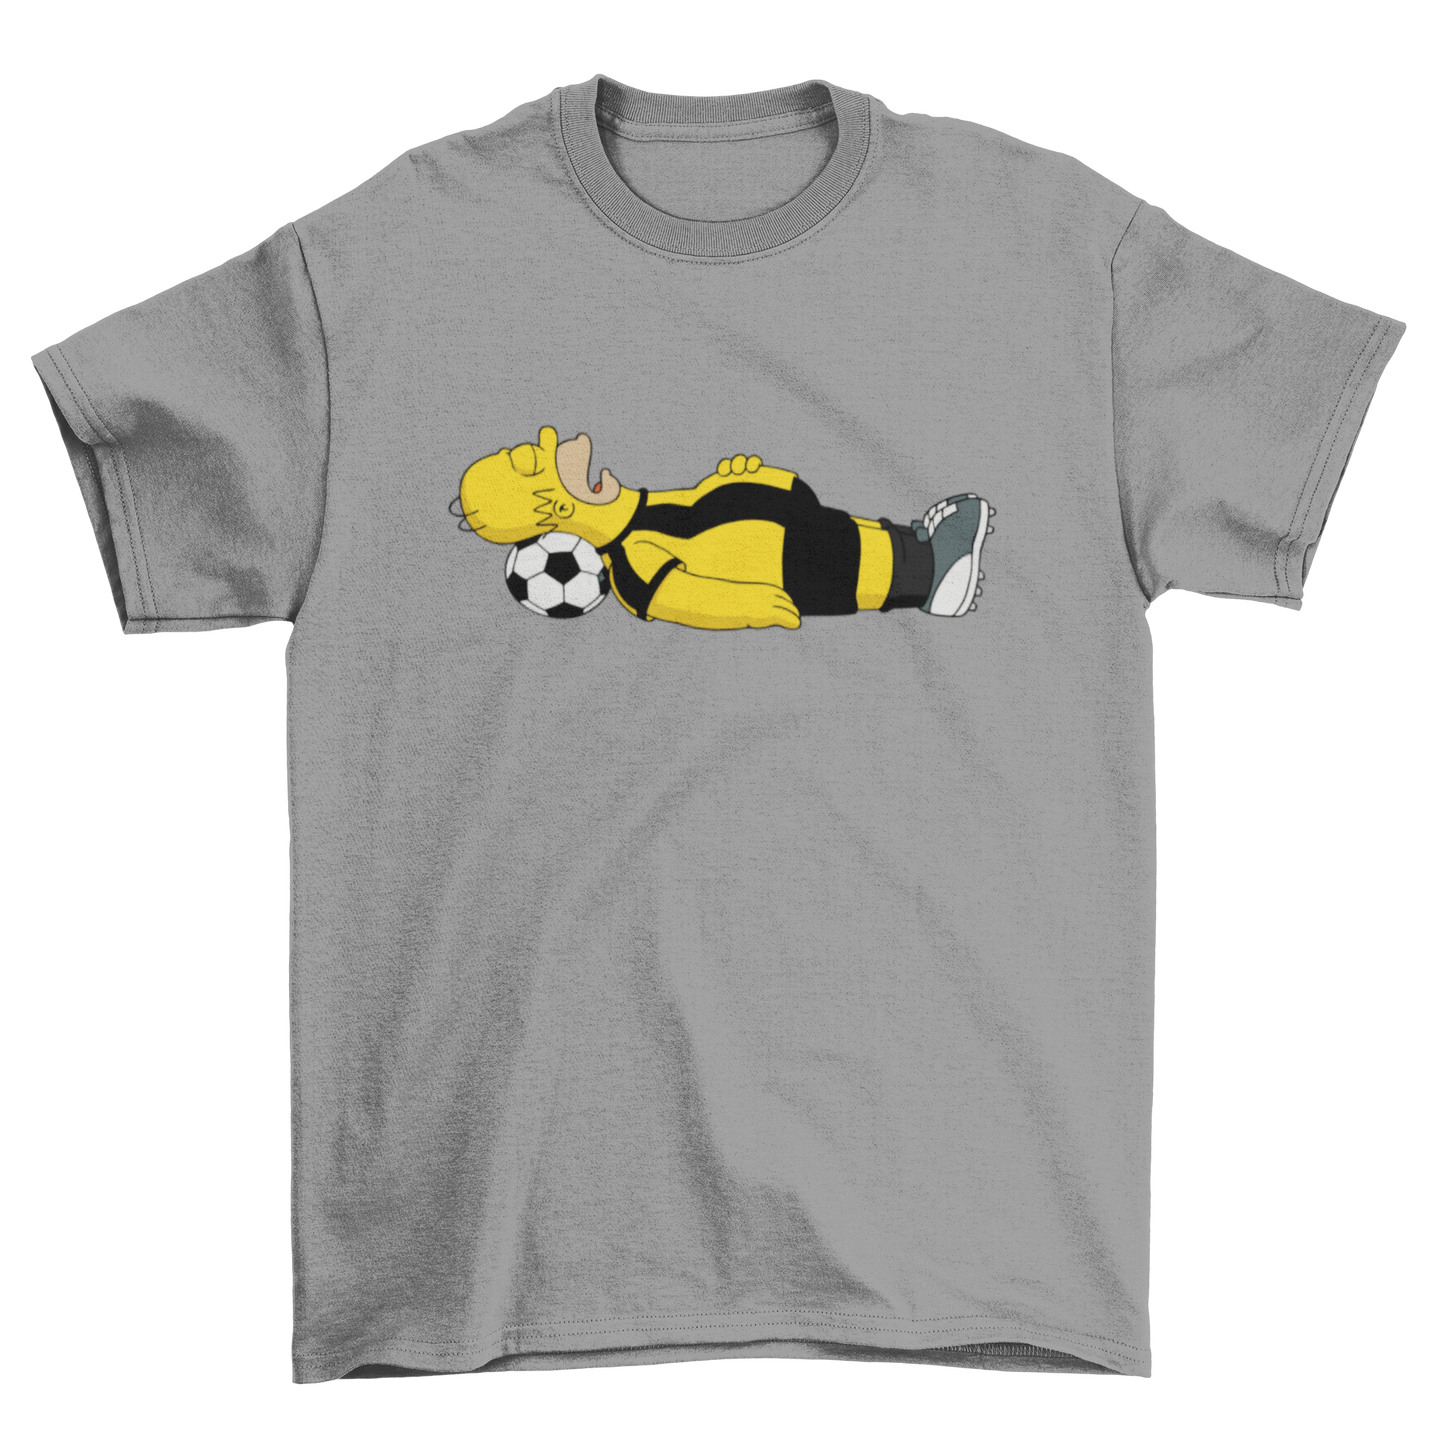 Ultras - Football Dreamers T-shirt